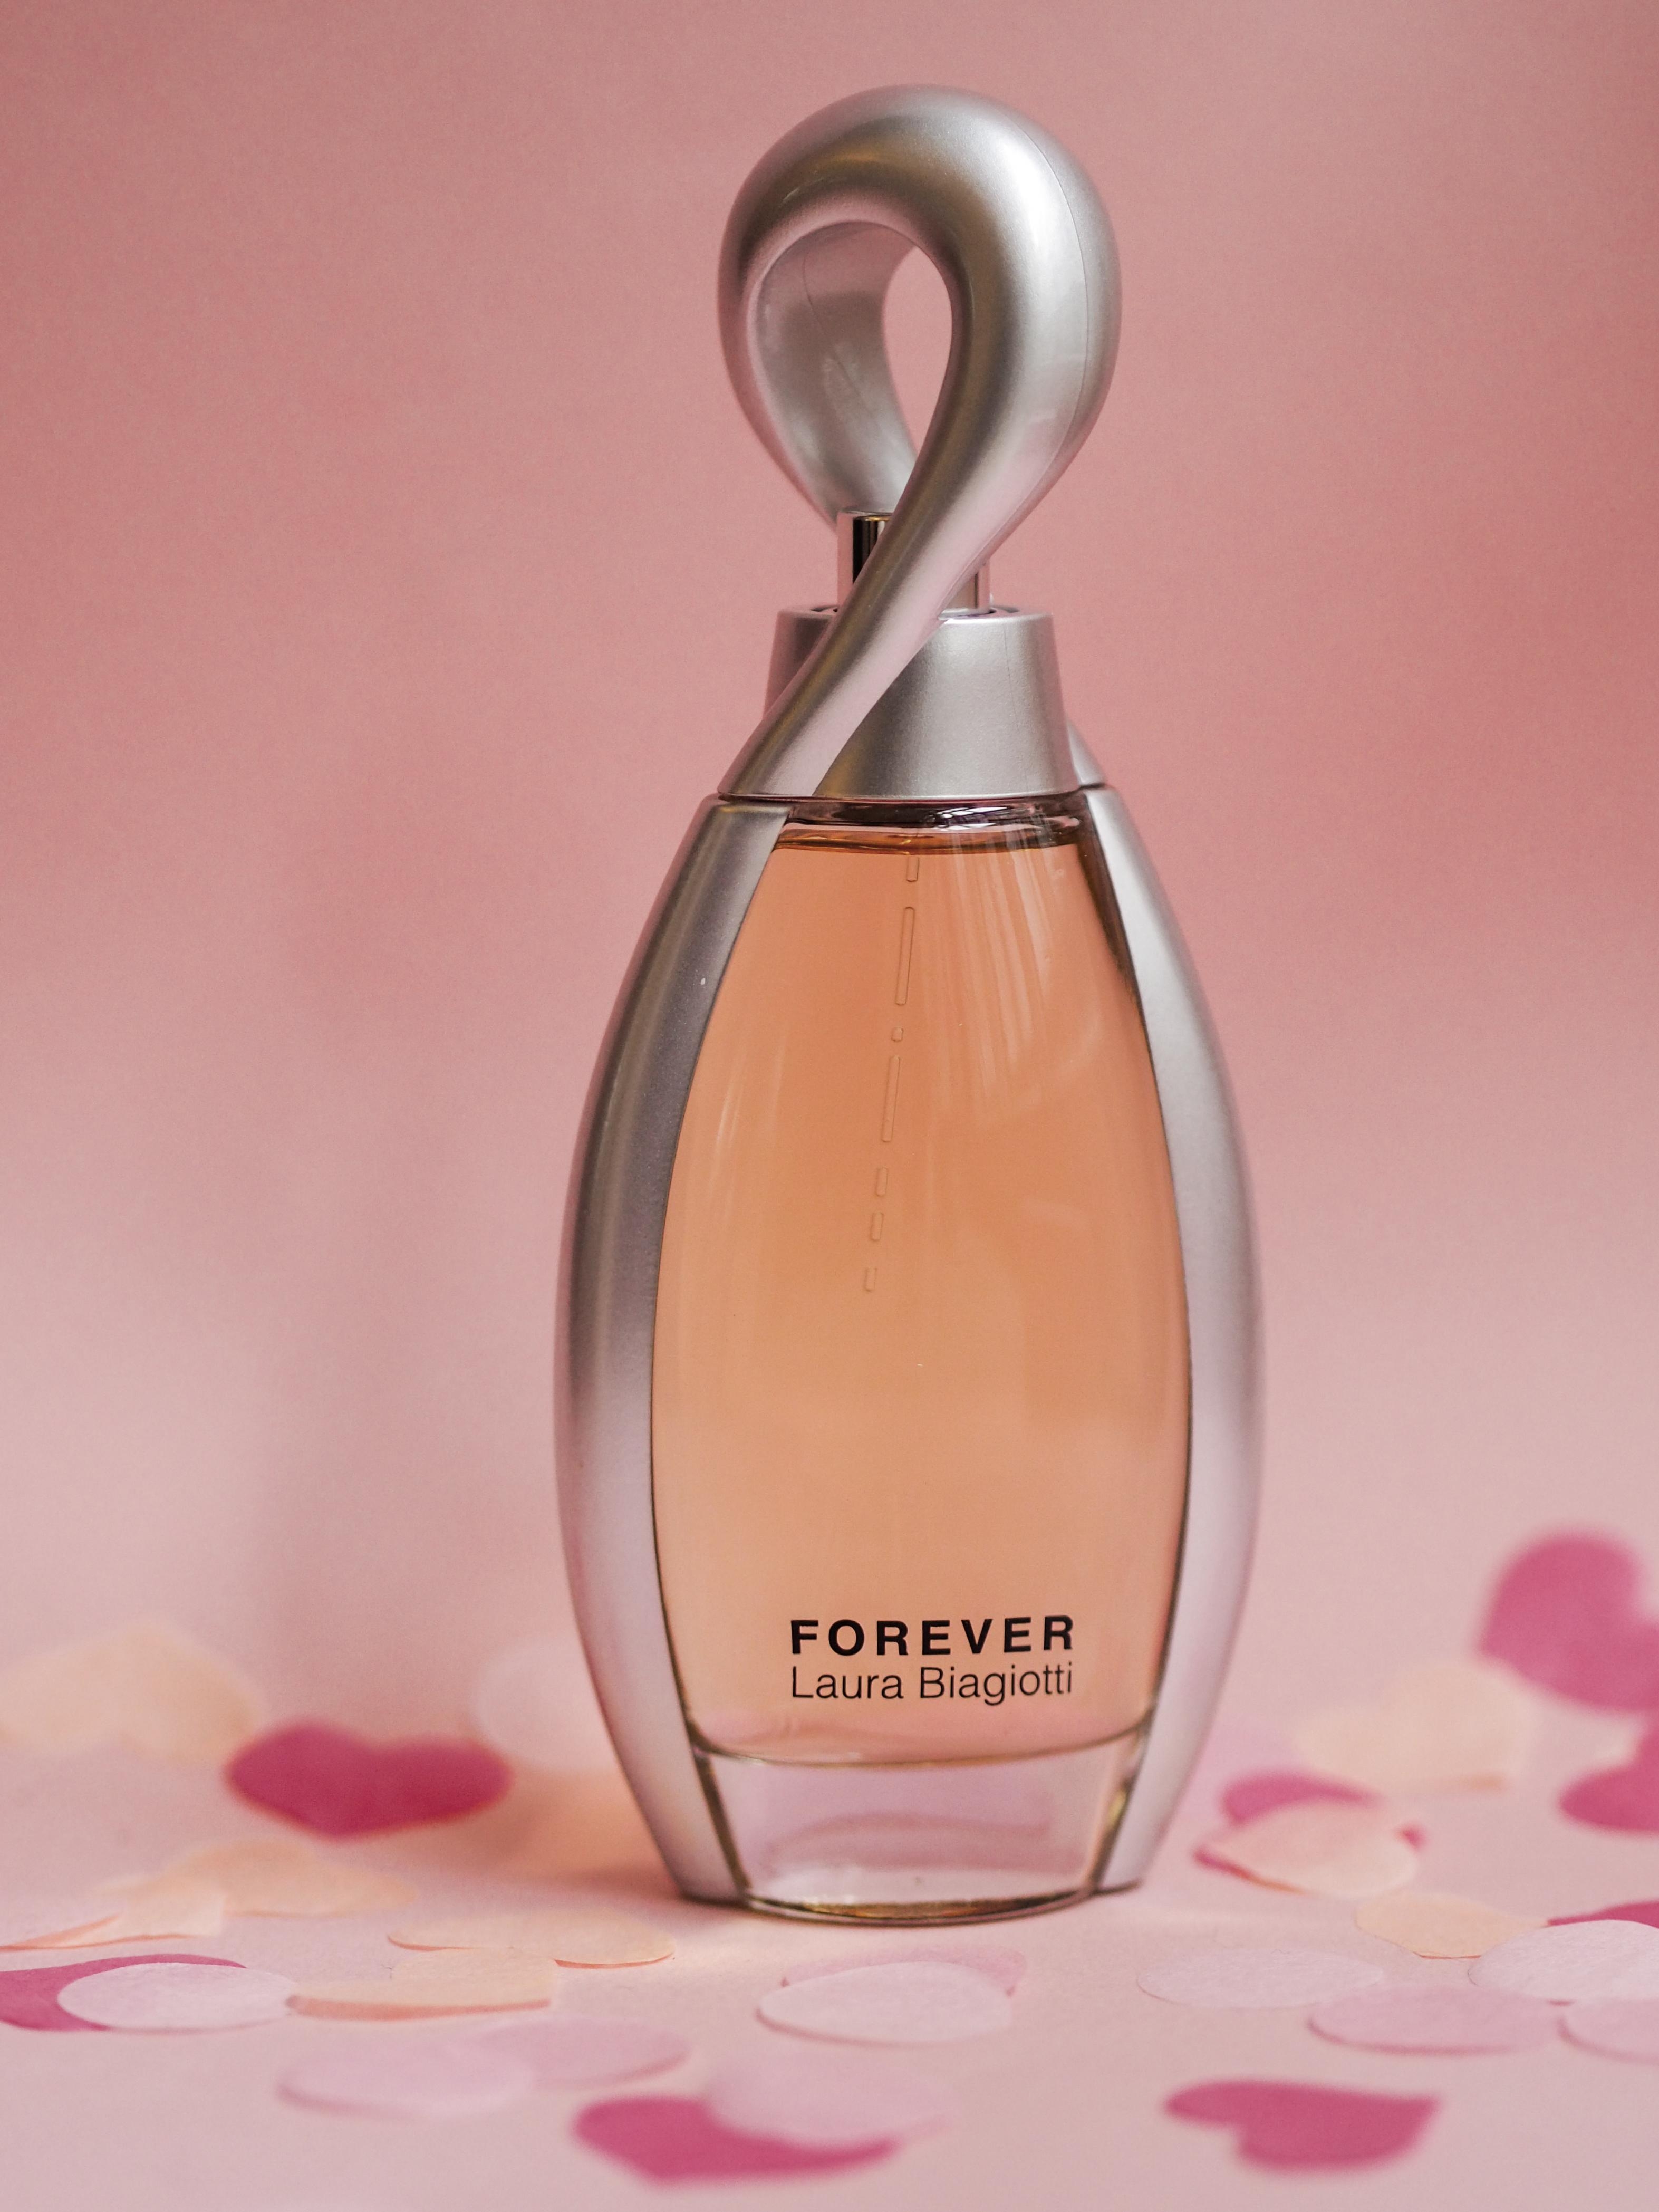 "Forever" von Laura Biagiotti - ein fruchtiger Duft für die Frau voller Leidenschaft #loveisintheair #laurabiagiotti